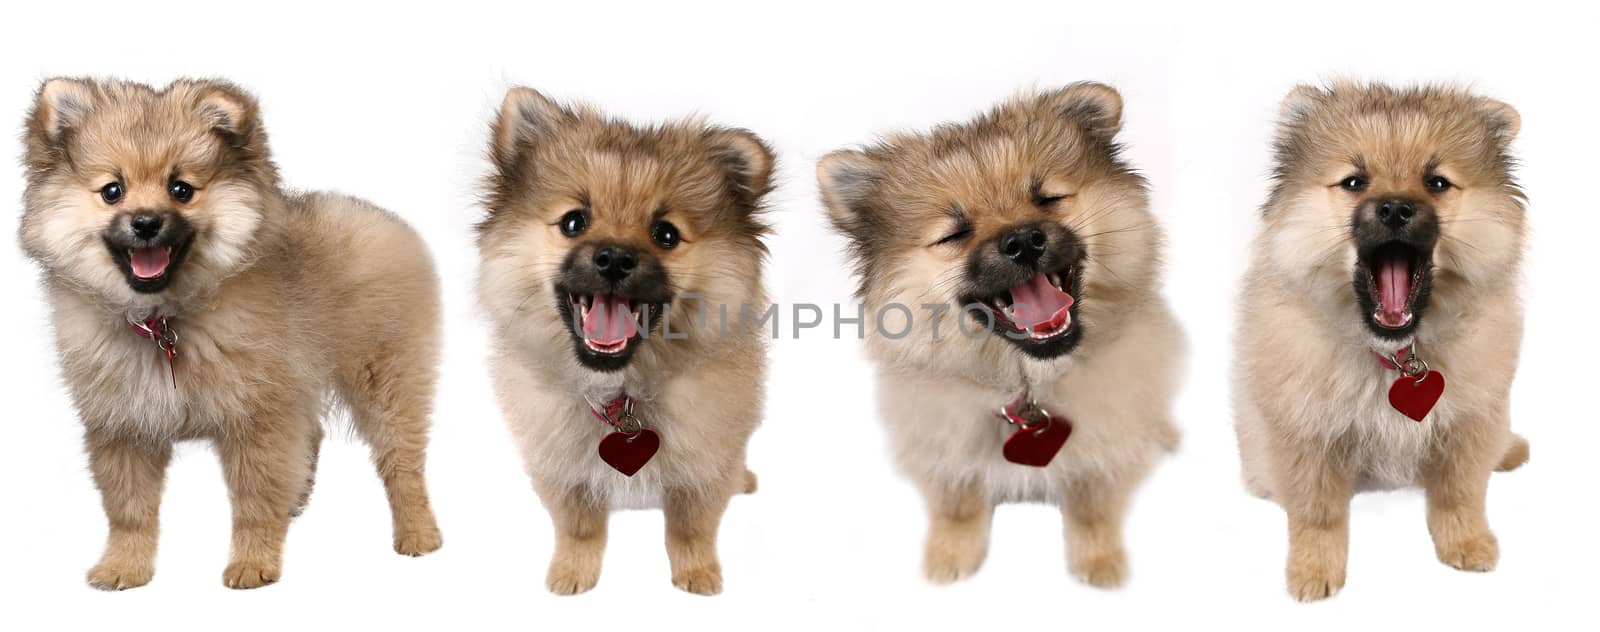 4 Poses of a Cute Pomeranian Puppy  by tobkatrina